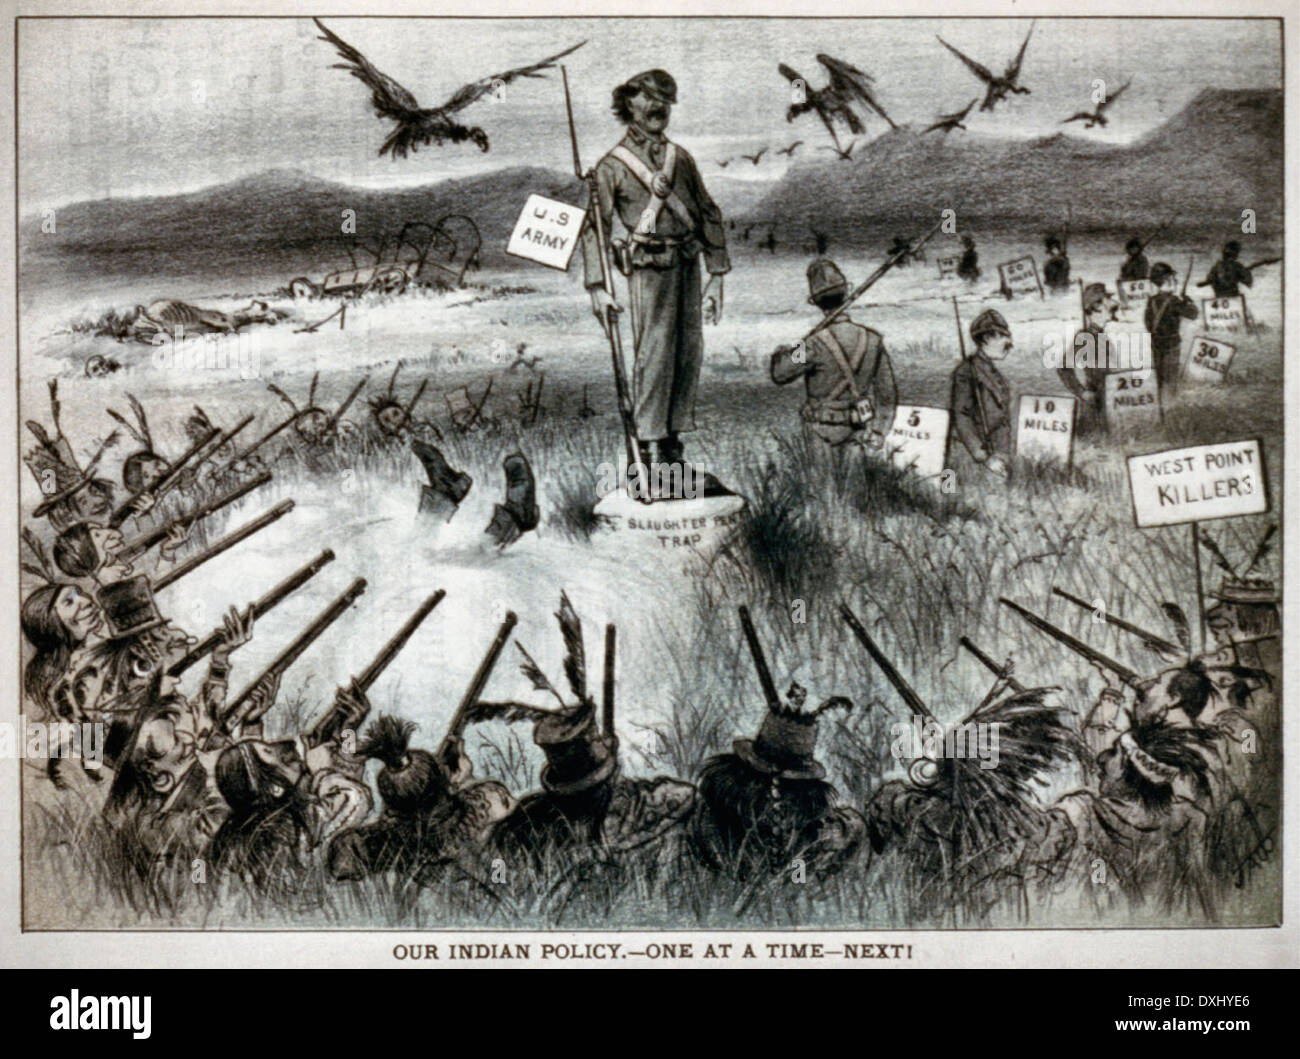 Unsere indische Politik - nacheinander - nächste! Karikatur zeigt Indianer "West Point Mörder" schießen auf US-Soldat auf Felsen "Schlachtung Stift Falle" steht. Andere Soldaten stationiert sind, auf Beiträge von 5 bis 80 Meilen, ca. 1879 Stockfoto